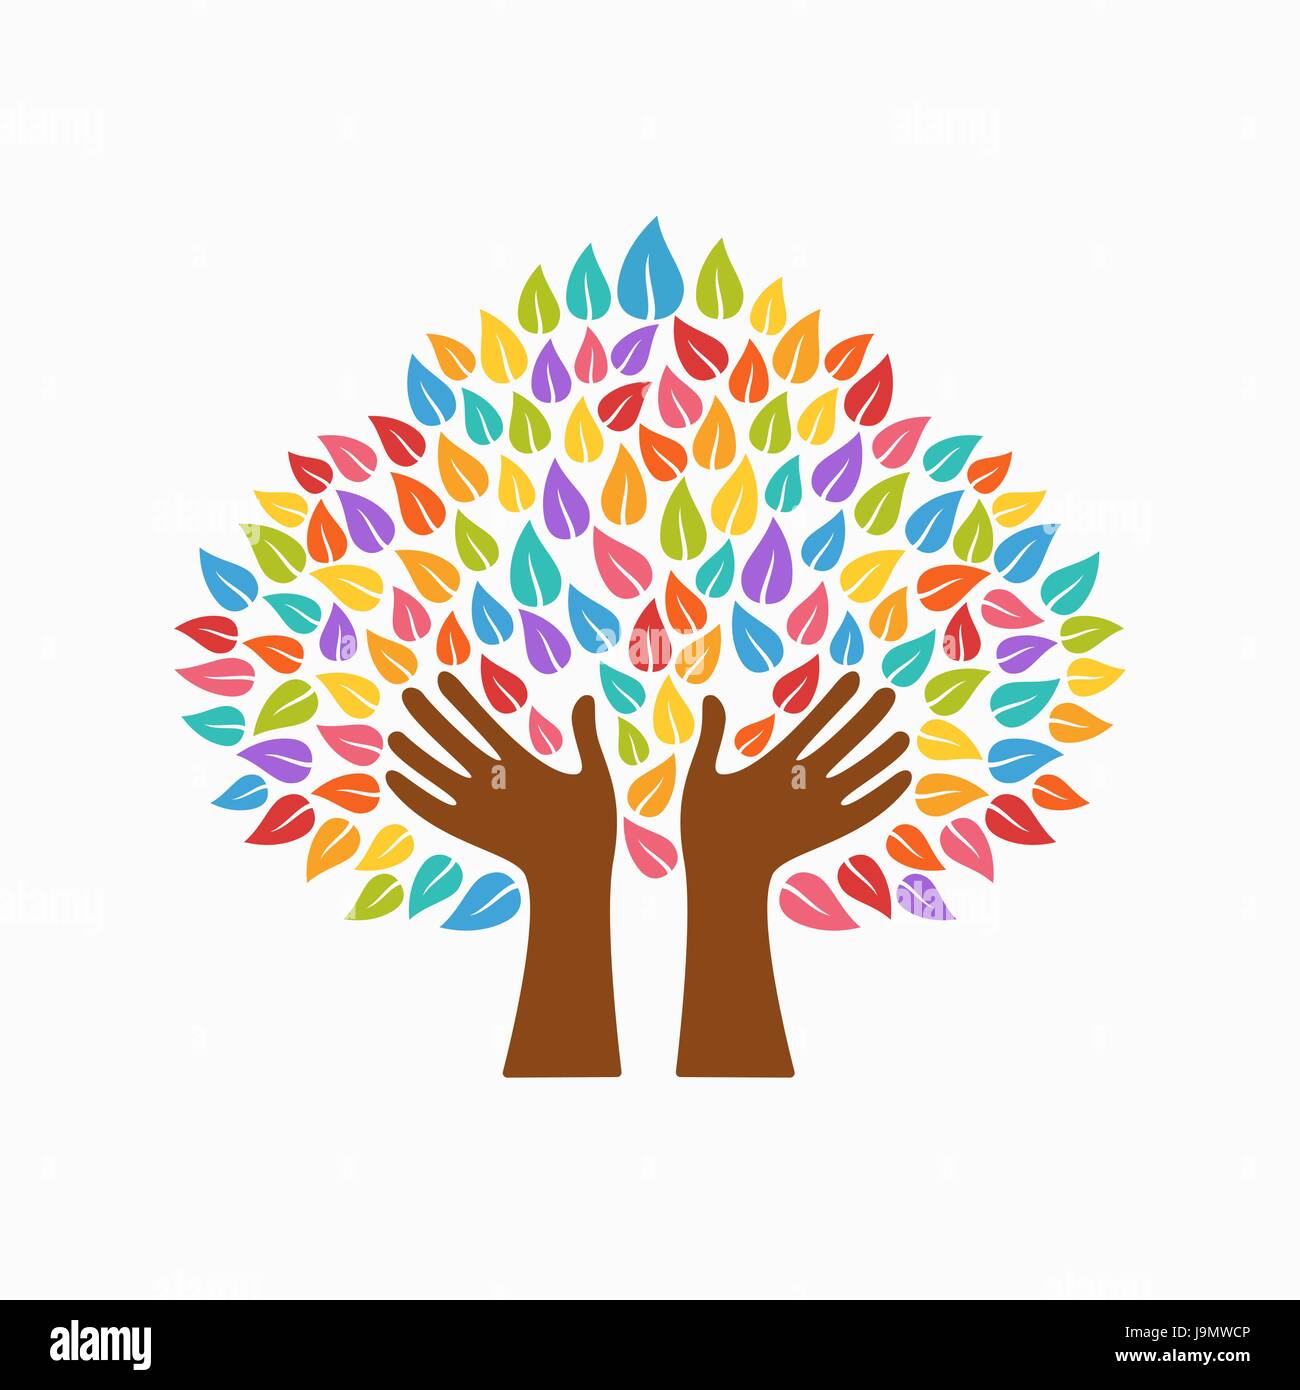 Symbole de l'arbre avec des mains et les feuilles multicolores. Concept illustration pour aider à l'organisation du projet, l'environnement ou de travail social. Vecteur EPS10. Illustration de Vecteur